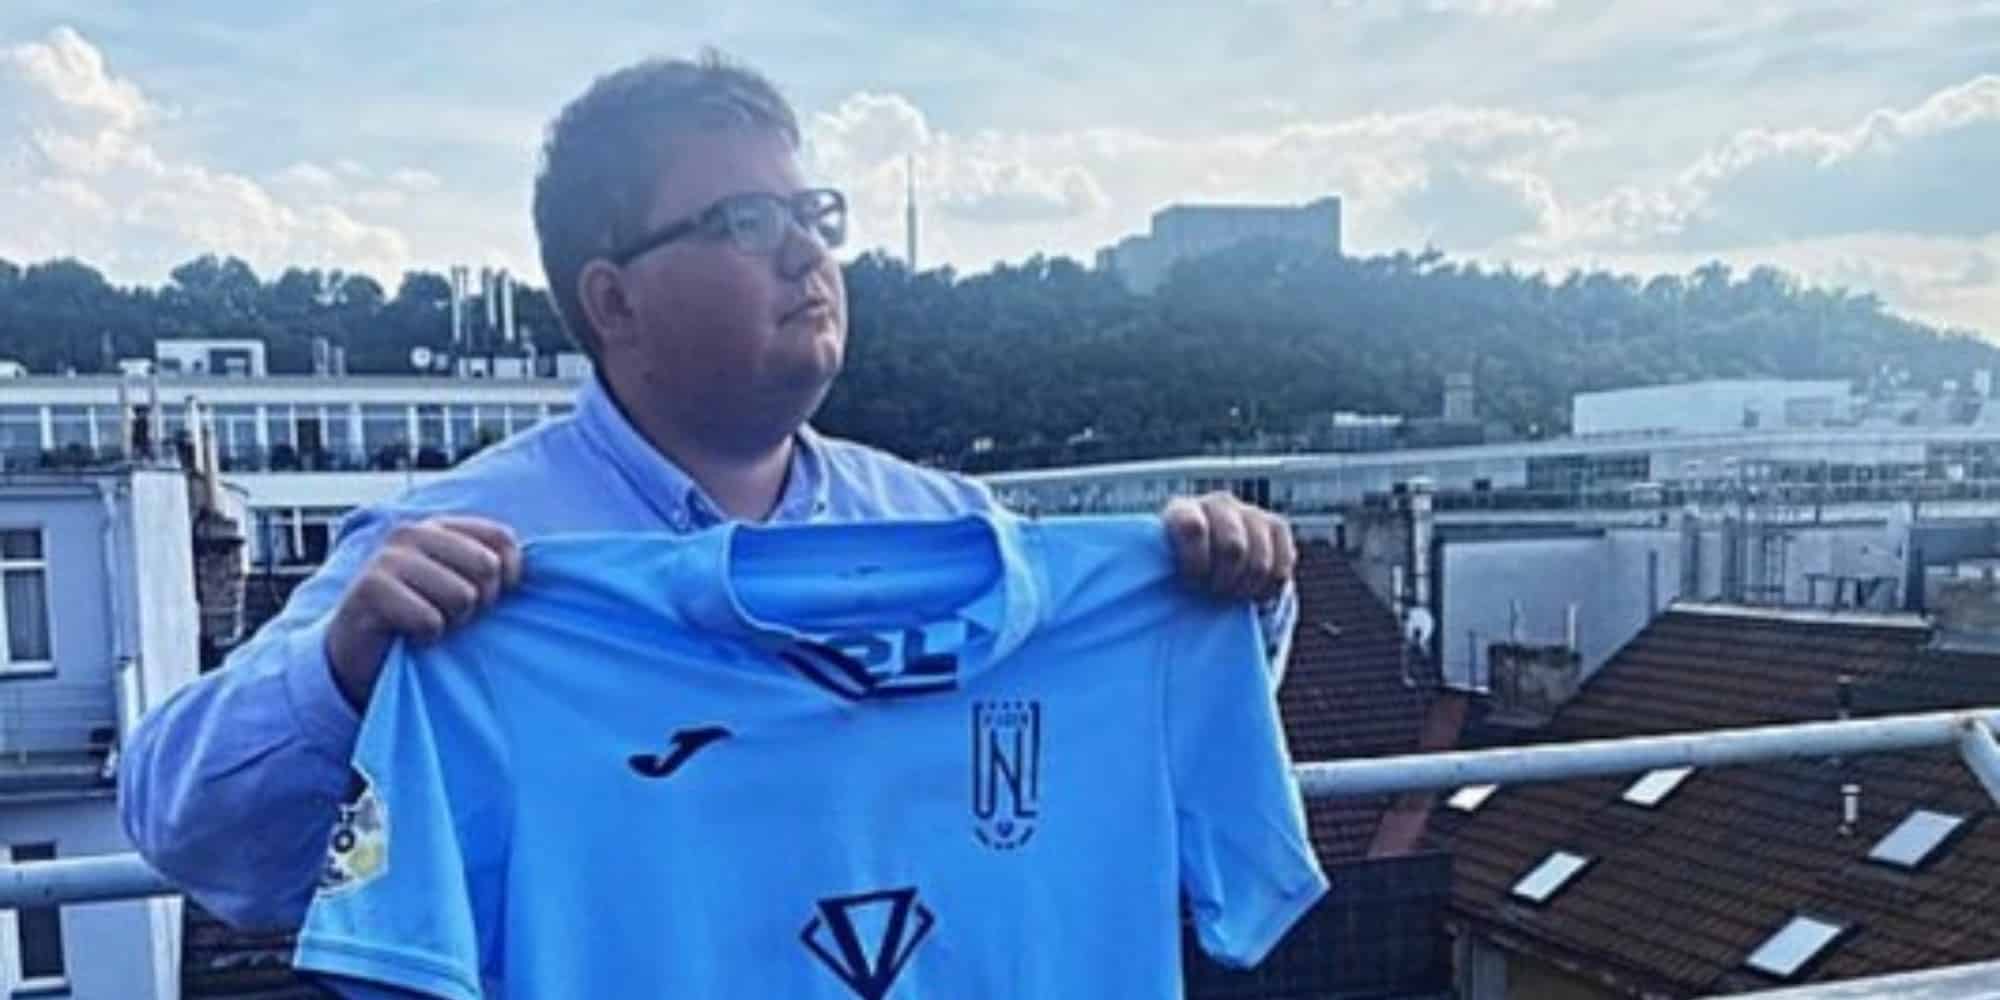 Ο 22χρονος που έπαιξε σε ομάδα της Τσεχίας έναντι αμοιβής